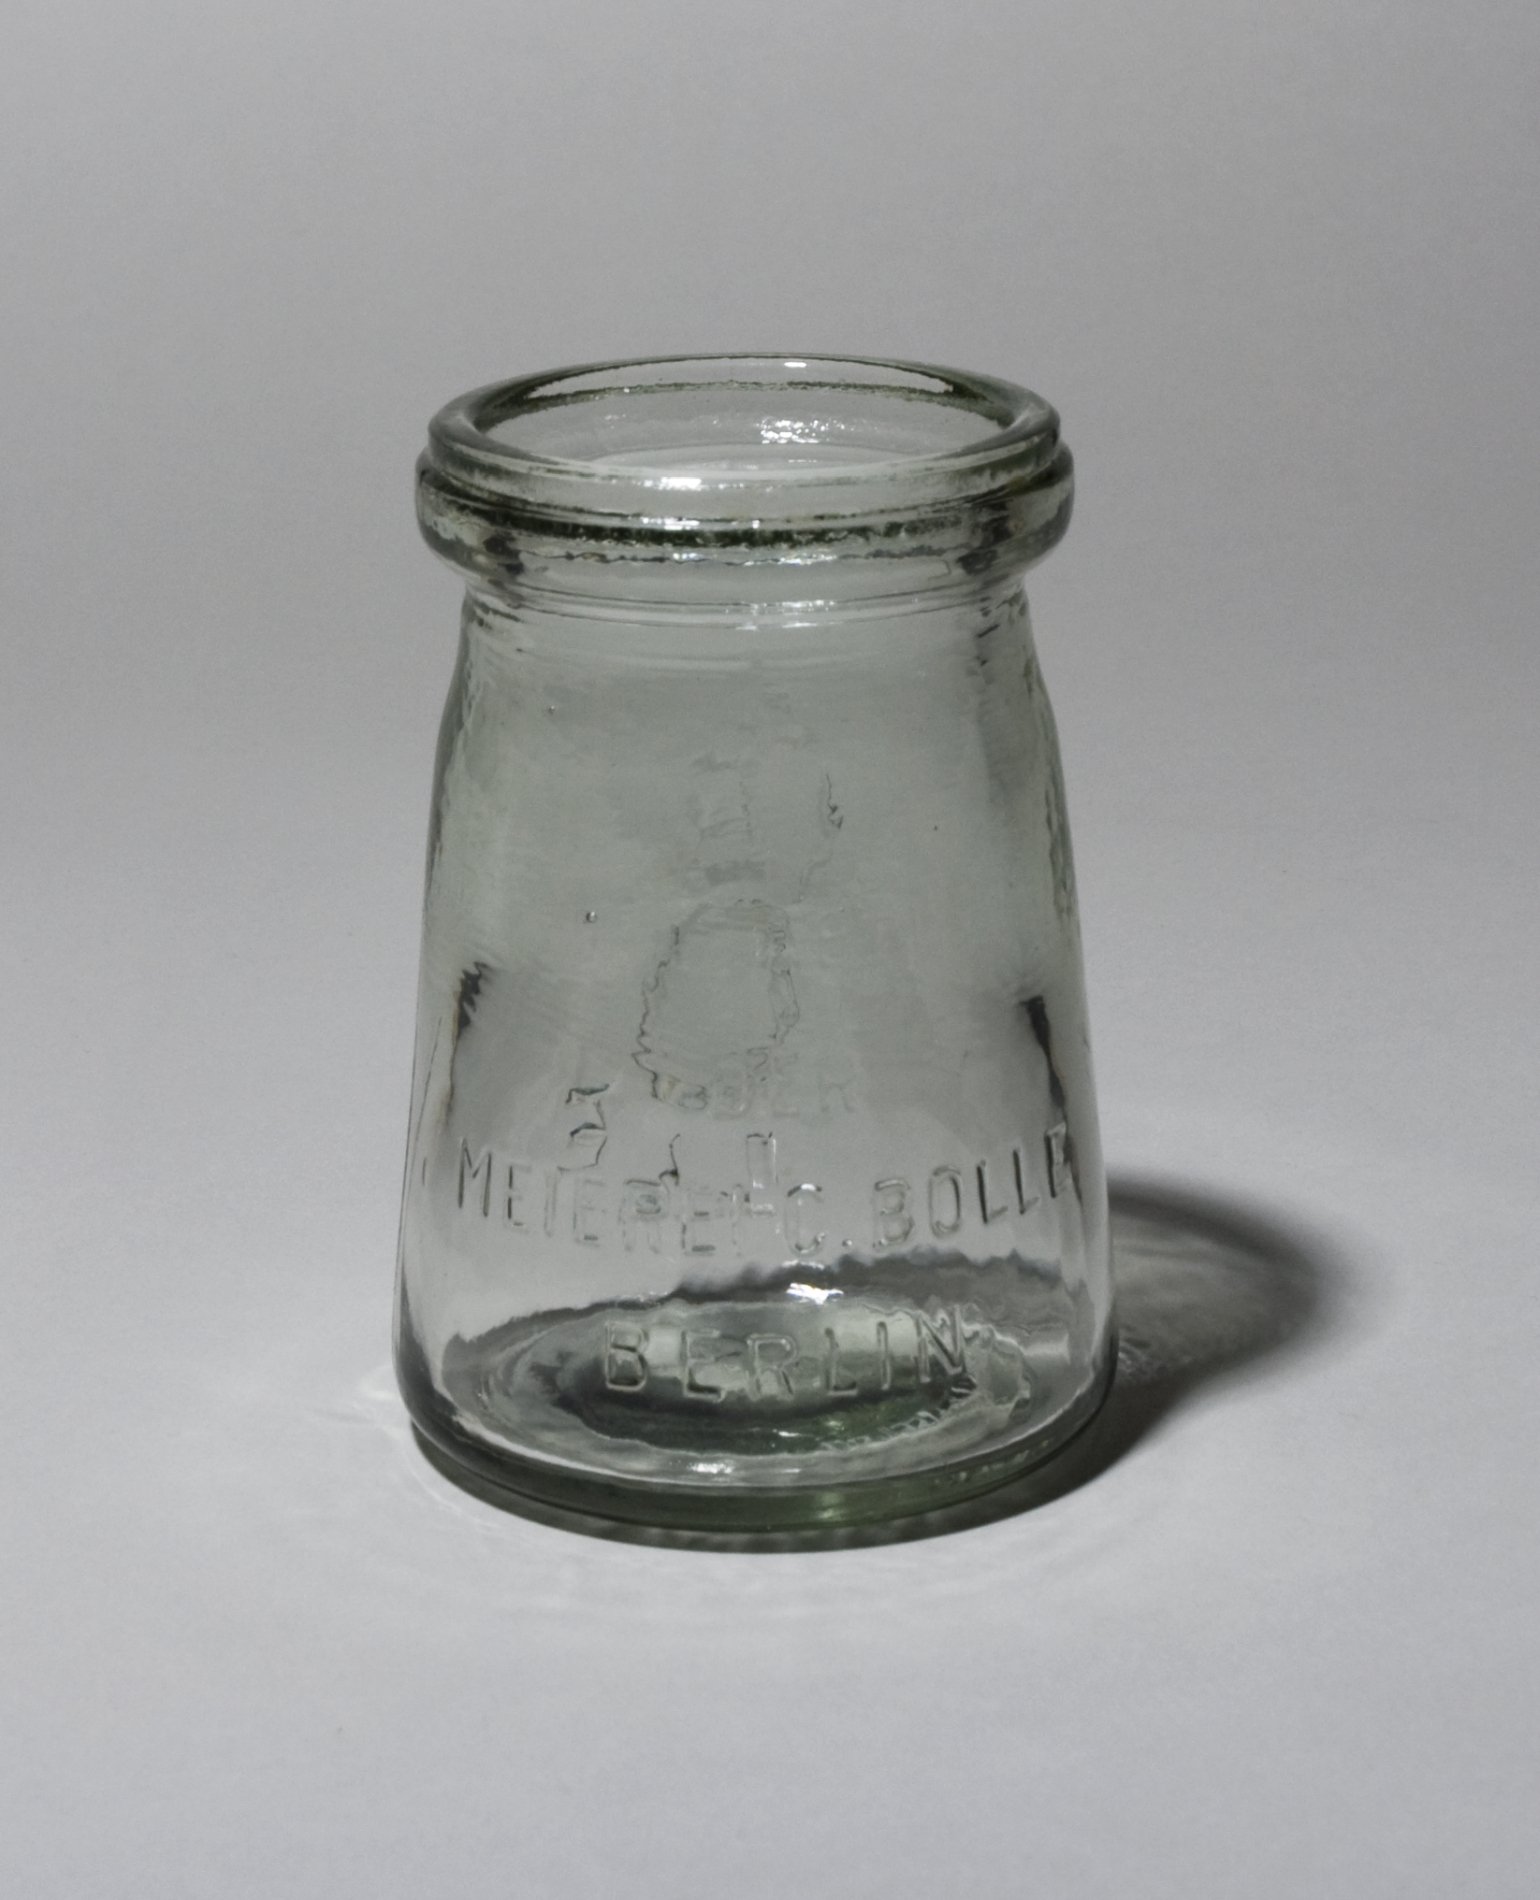 Joghurtglas "Meierei BOLLE" (Stiftung Domäne Dahlem - Landgut und Museum, Weiternutzung nur mit Genehmigung des Museums CC BY-NC-SA)